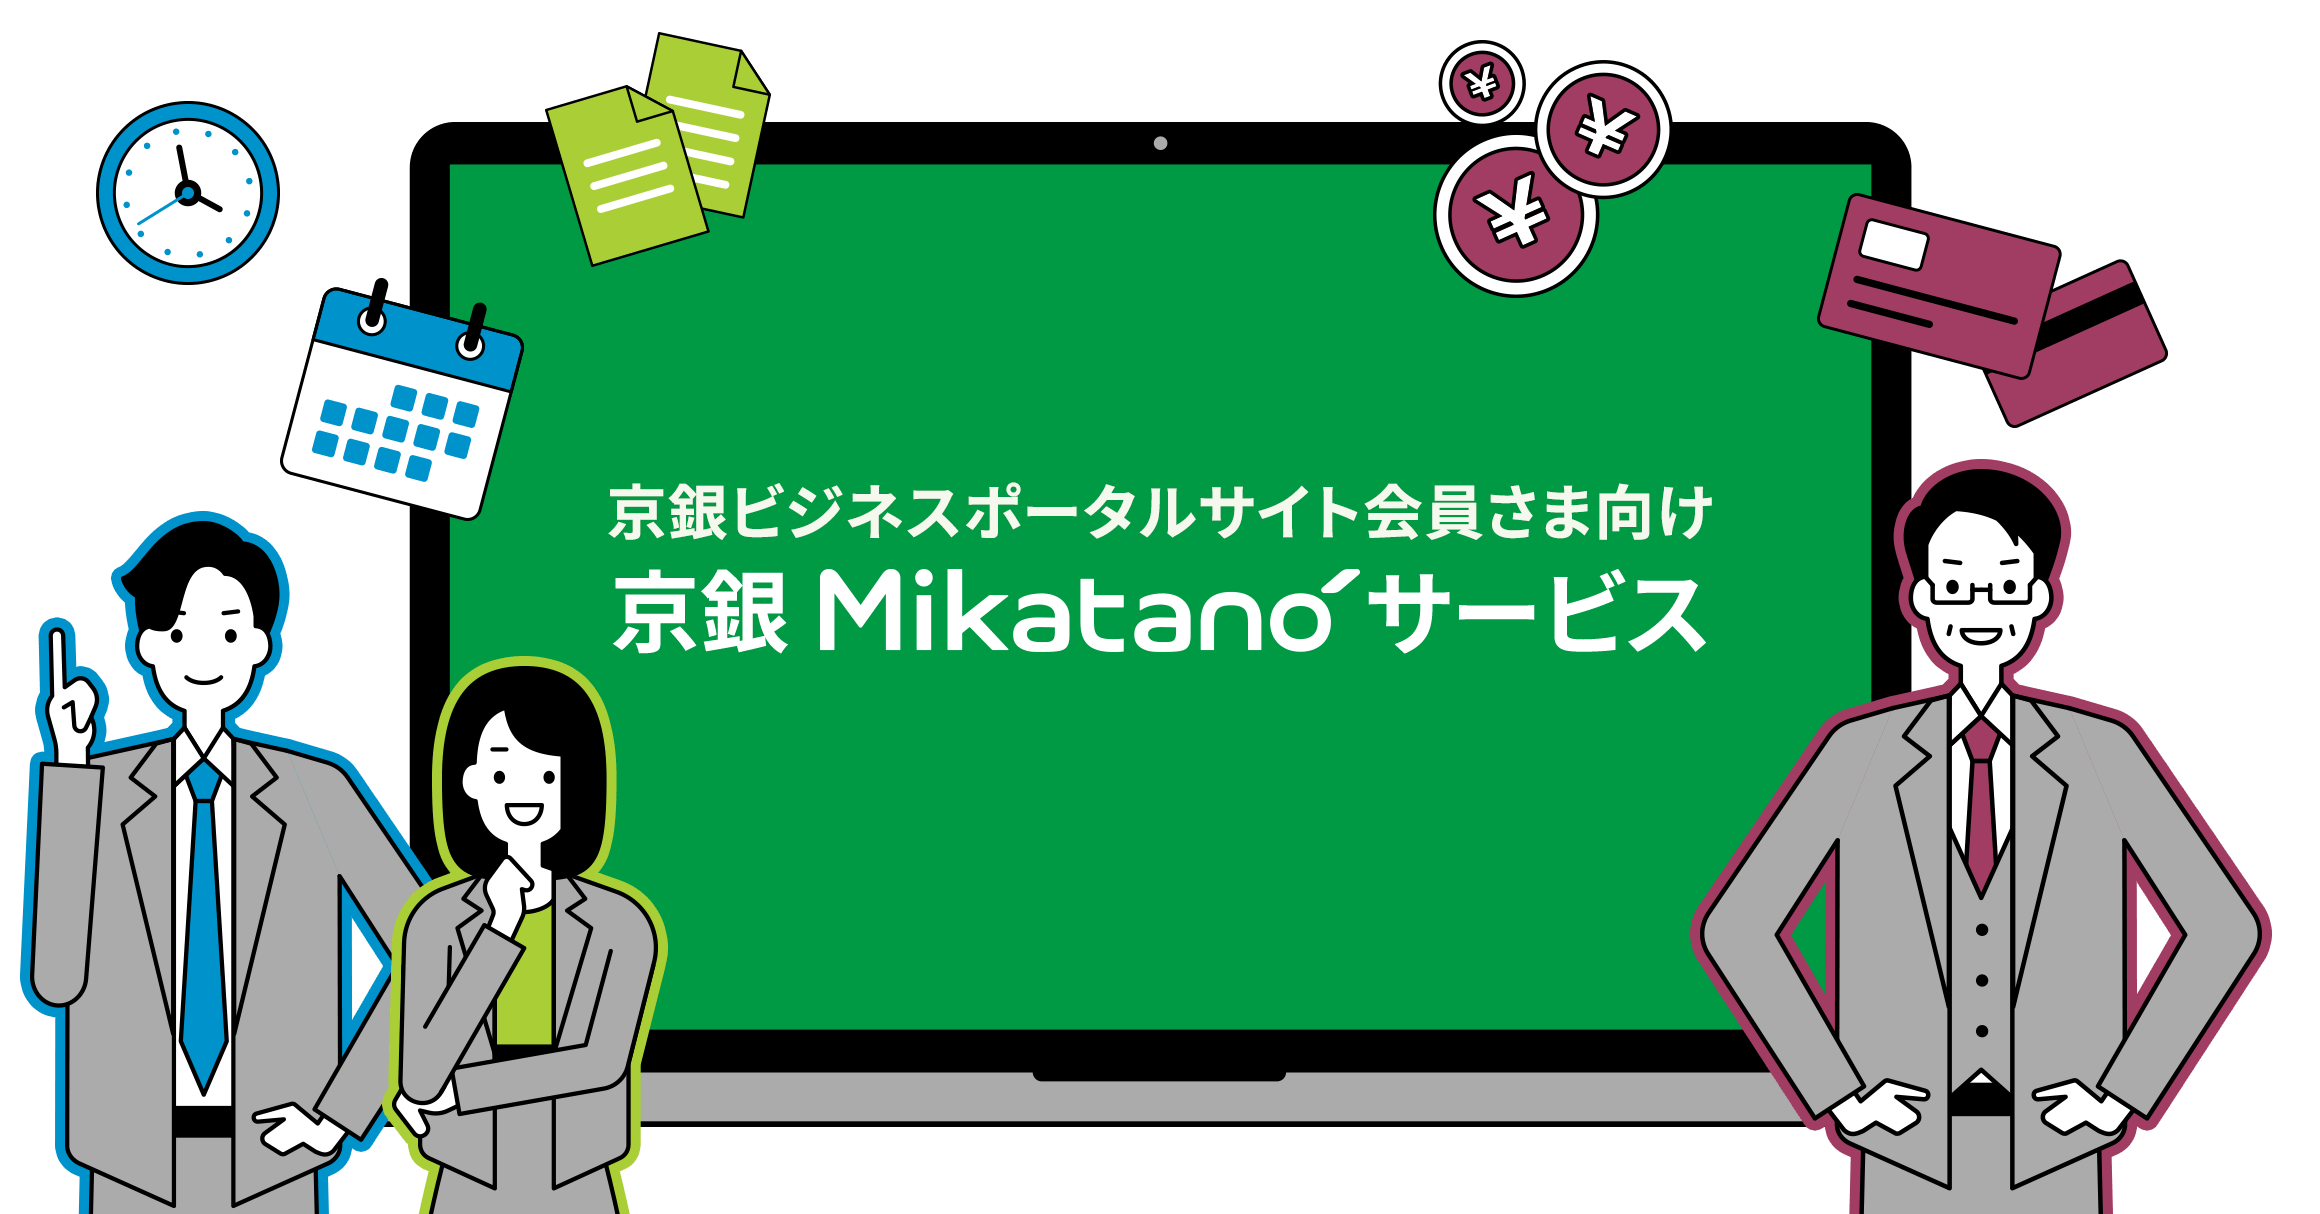 京銀 Mikatano サービス